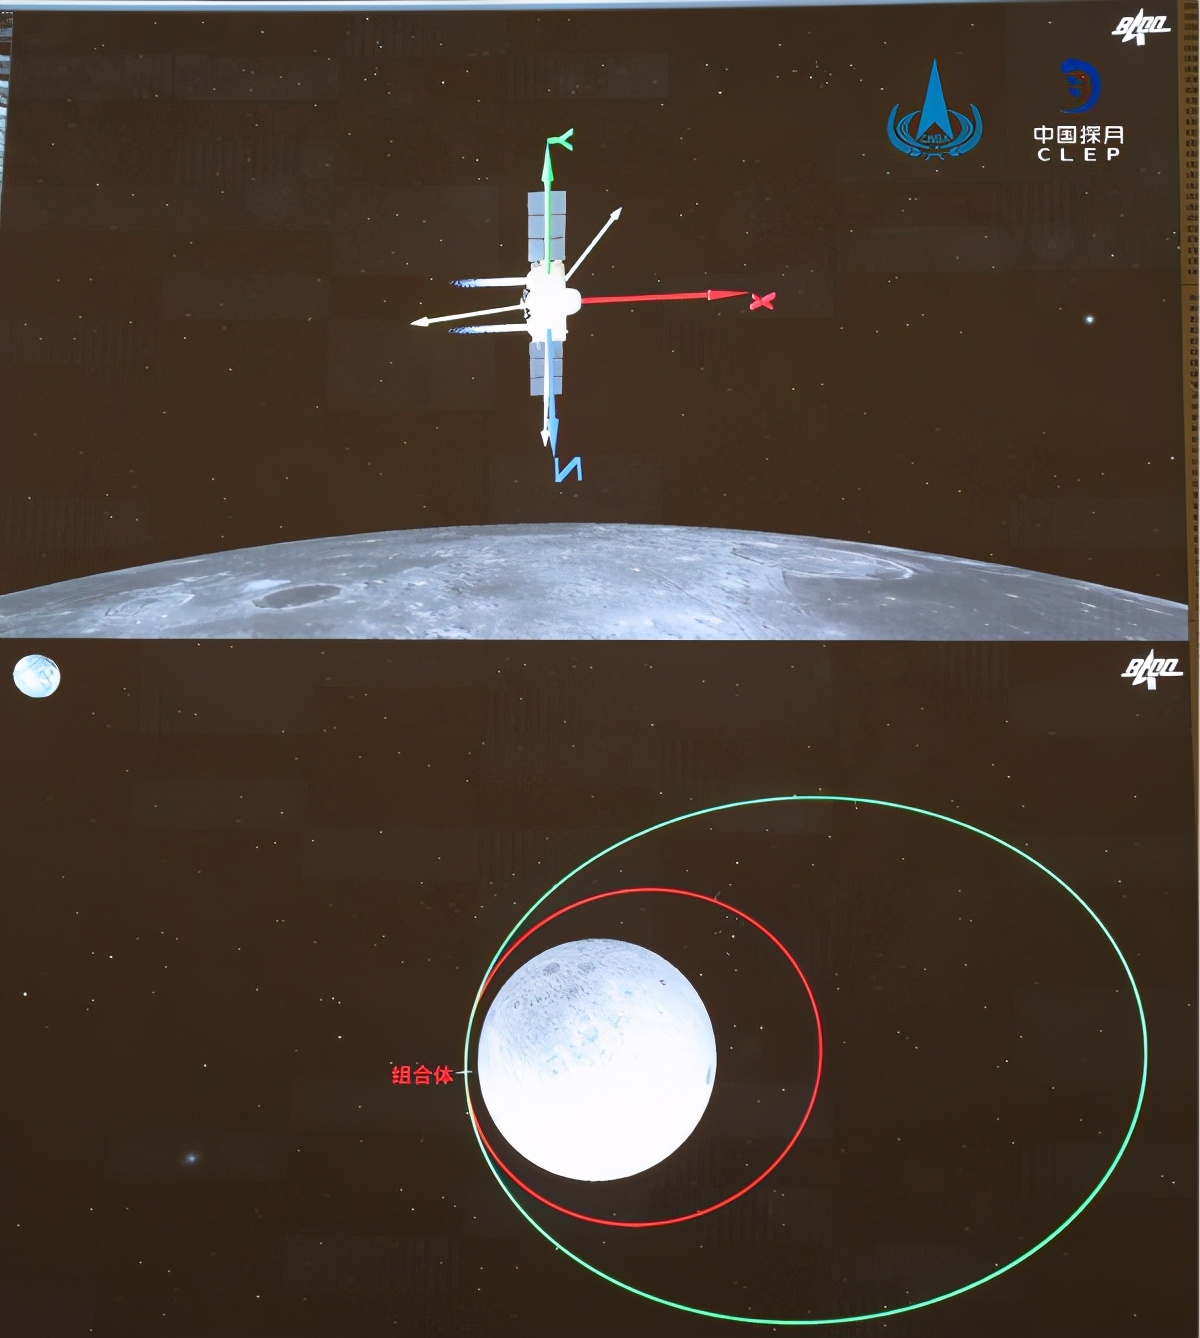 嫦娥二号——中国深空探测的传奇卫星【航天科普31】 - 哔哩哔哩